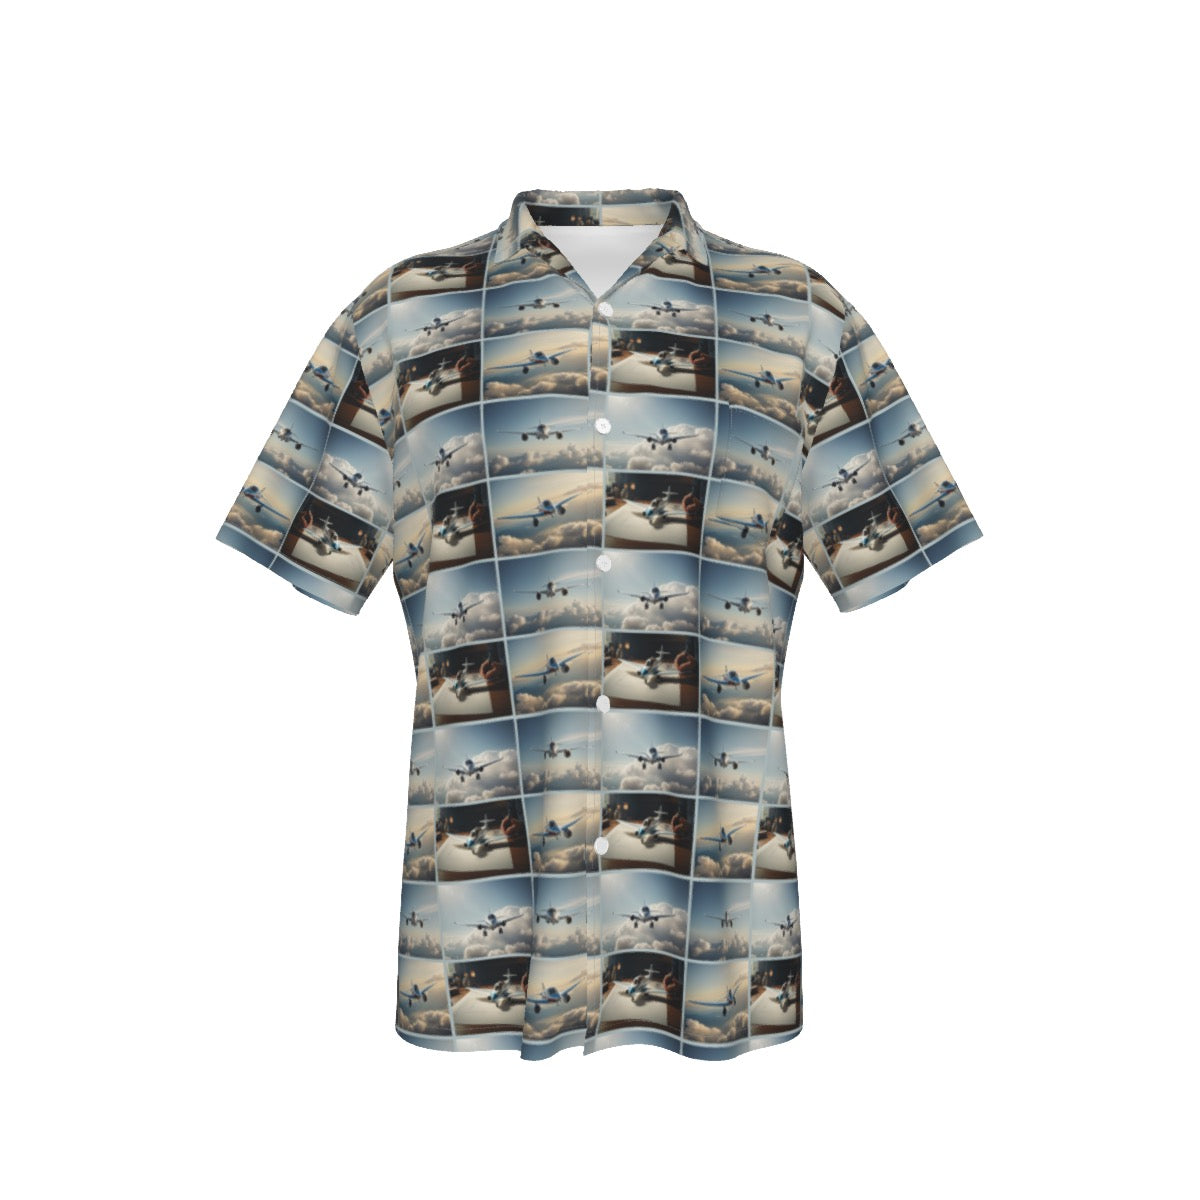 Let's Fly -- Men's Hawaiian Shirt With Pocket